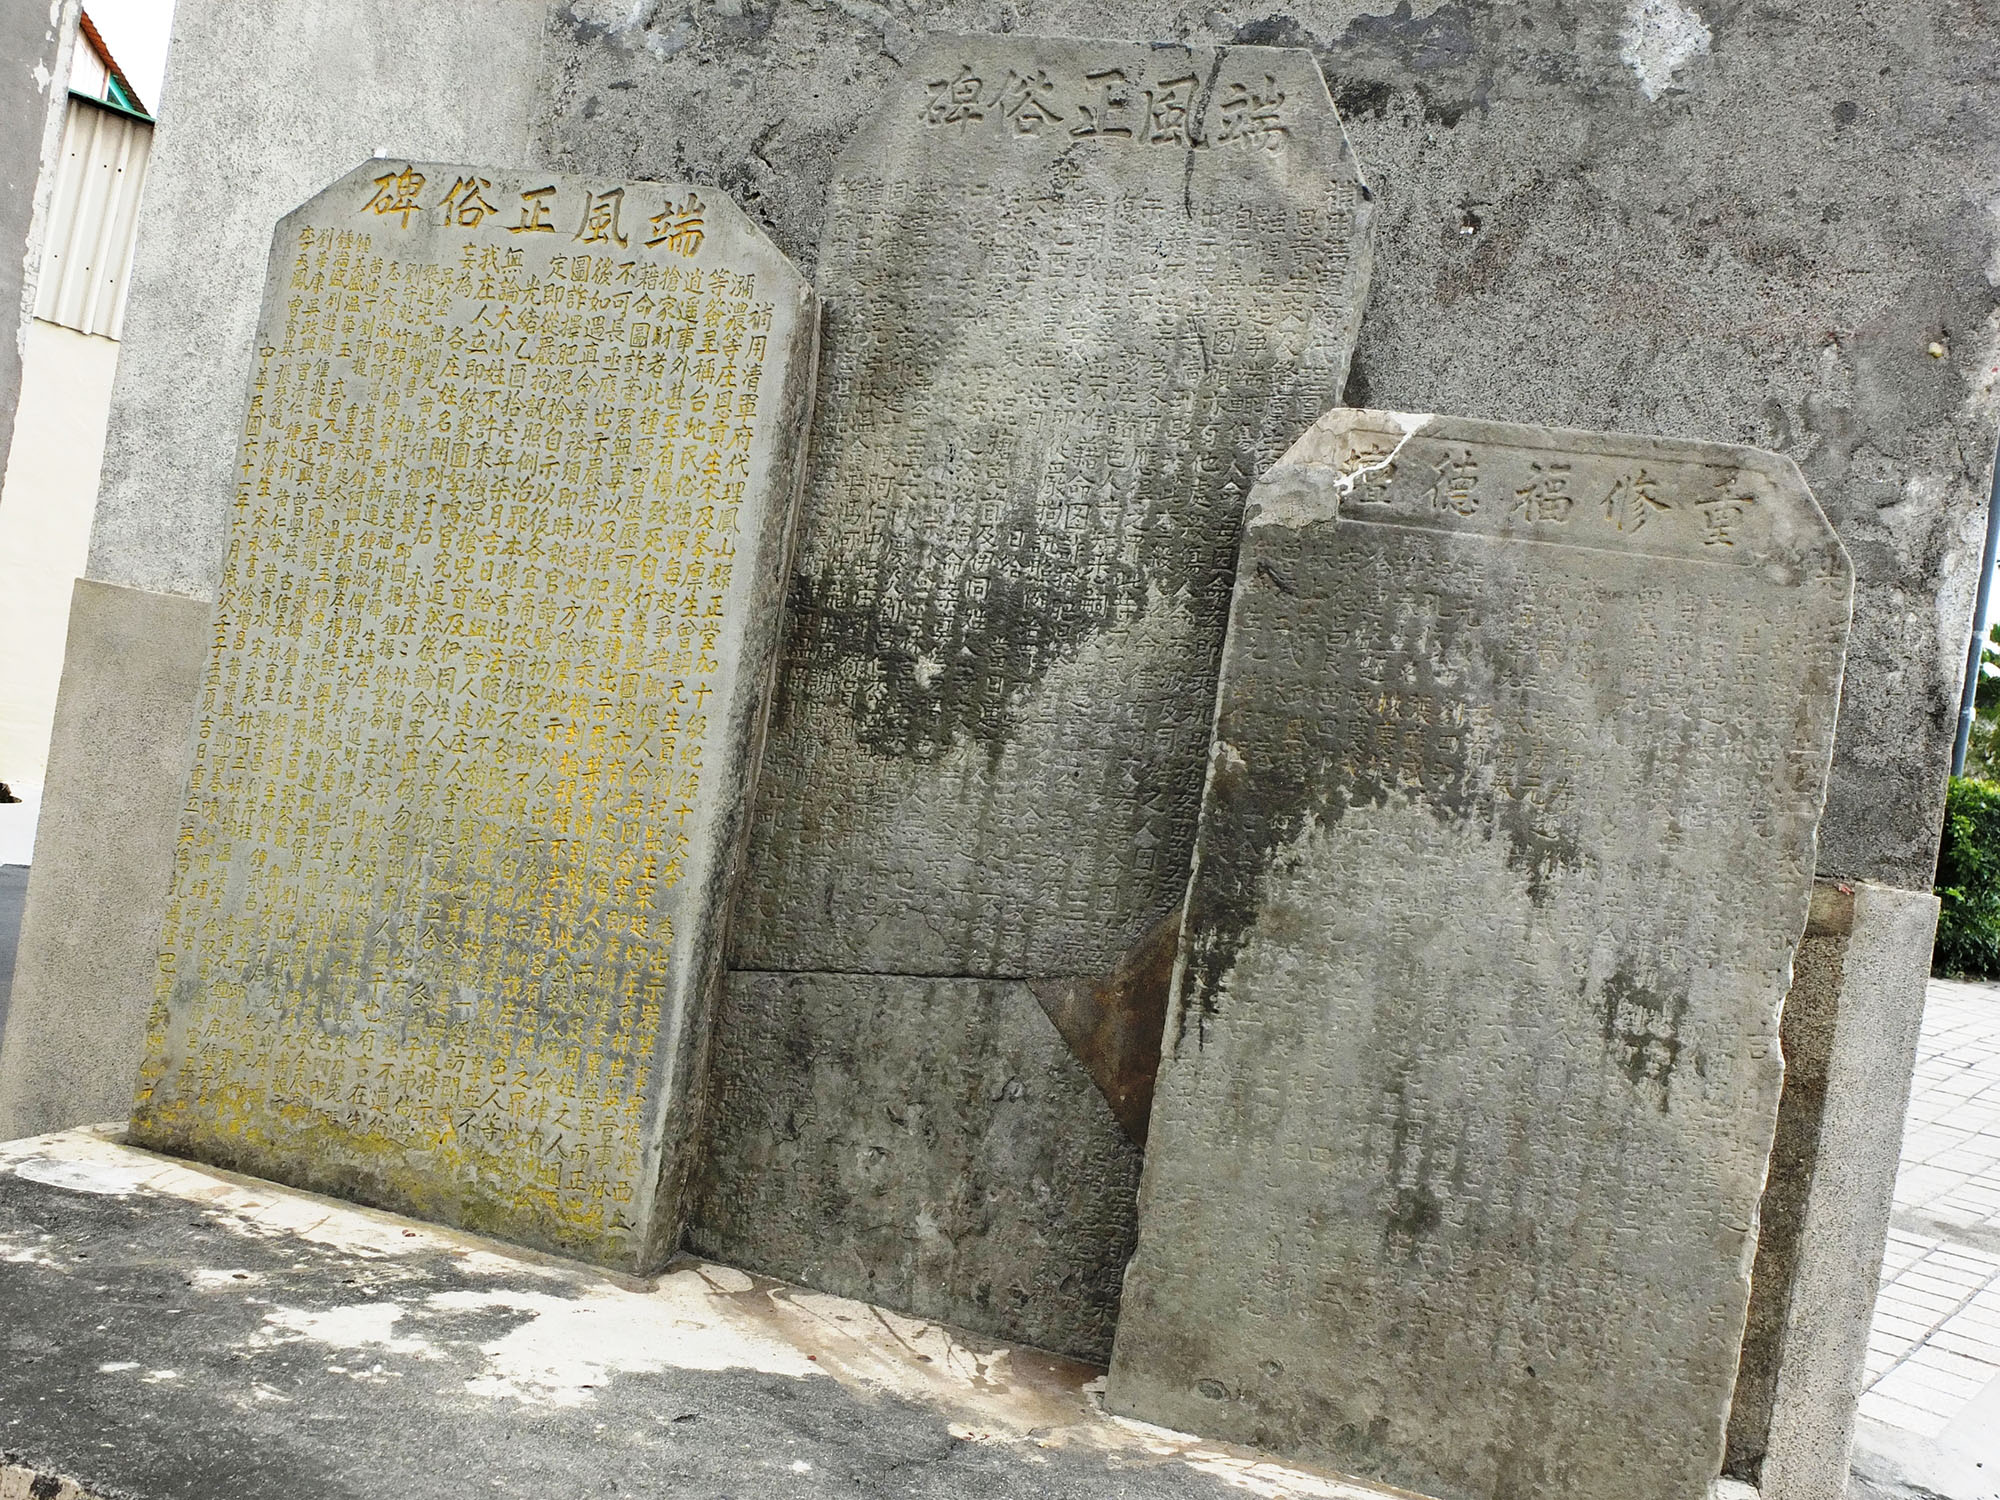 「端正風俗牌」和「重修福德壇」兩塊石碑